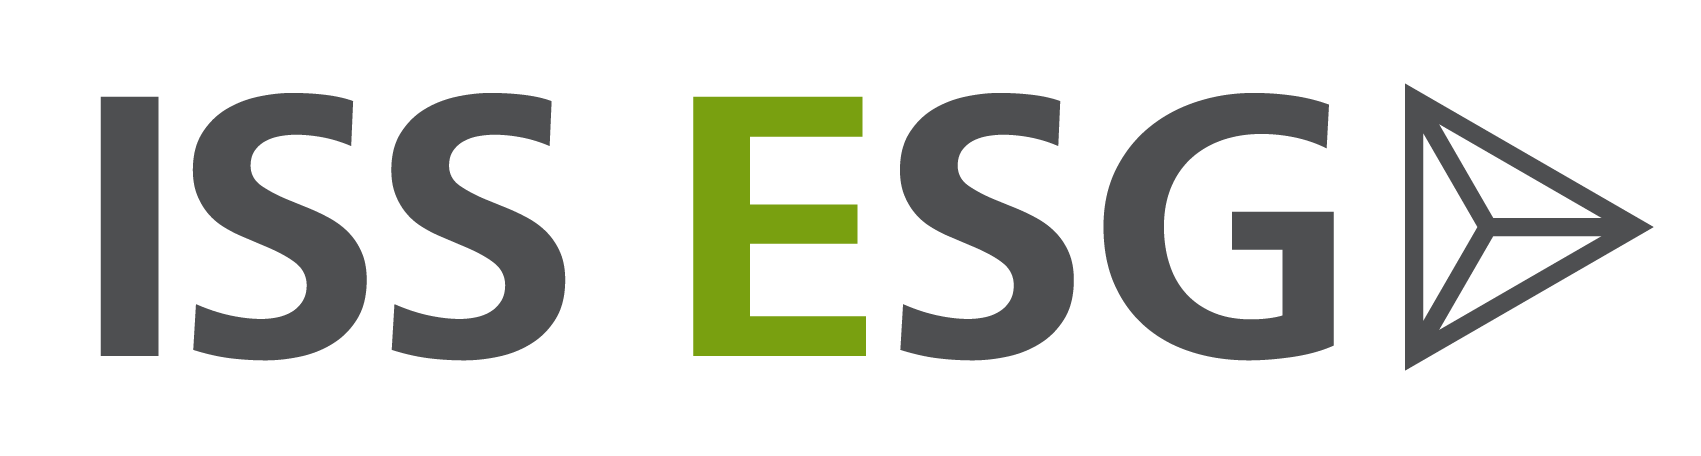 Esg практики. ESG. ESG лого. ESG проекты. ISS ESG rating.